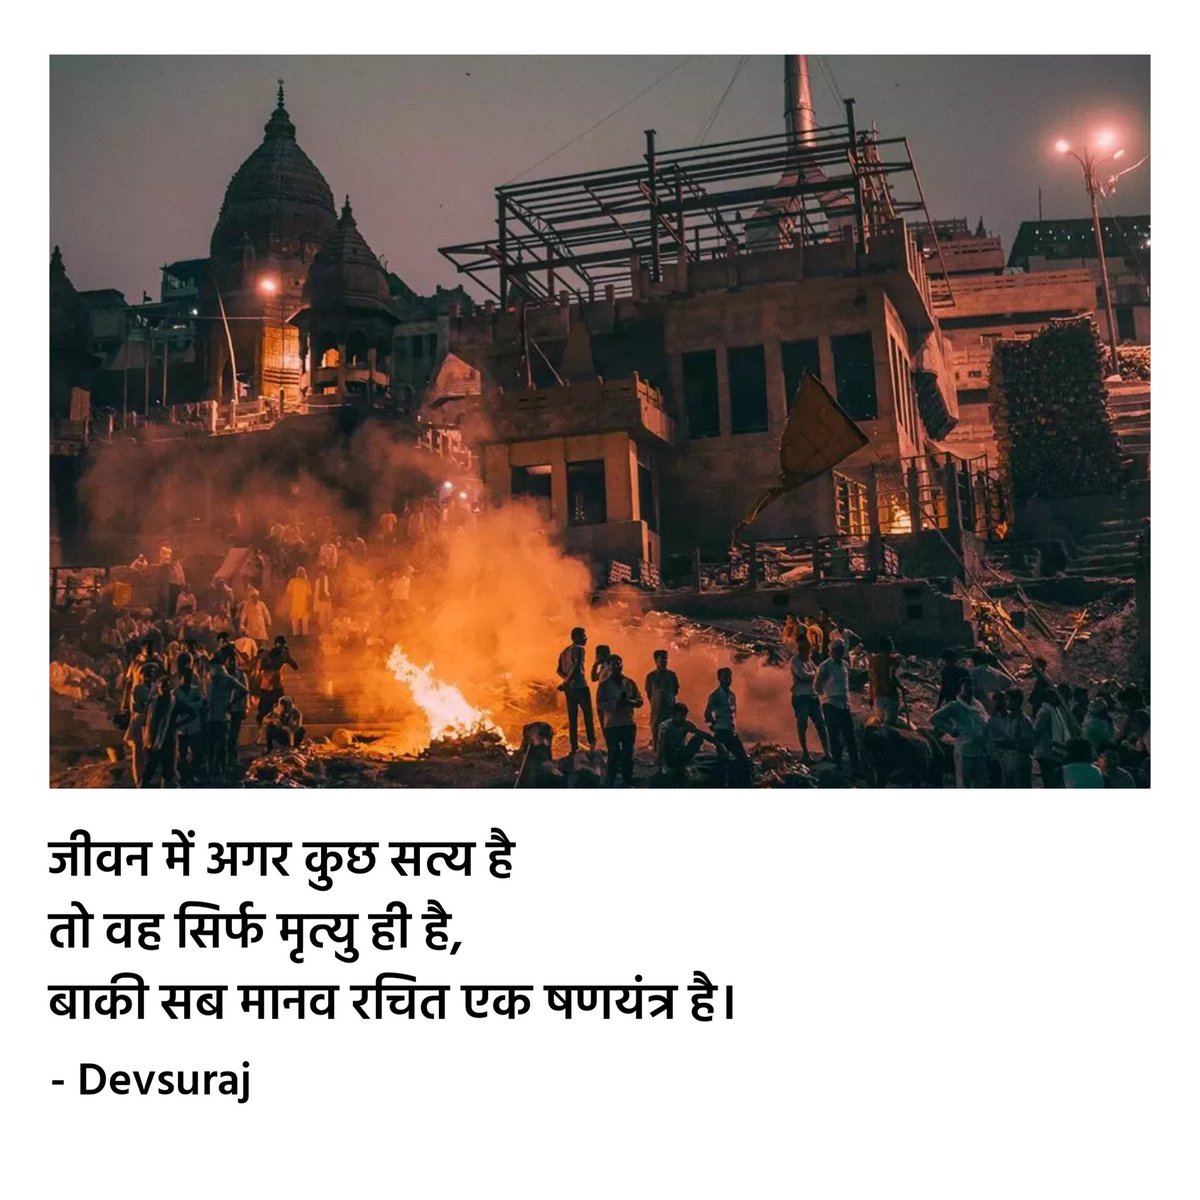 जीवन में अगर कुछ सत्य है तो वह सिर्फ मृत्यु ही है, बाकी सब मानव रचित एक षणयंत्र है। - Devsuraj #hindipoetry #hindiquotes #kavita #poetry #quotes #hindirachnakaar #devsuraj